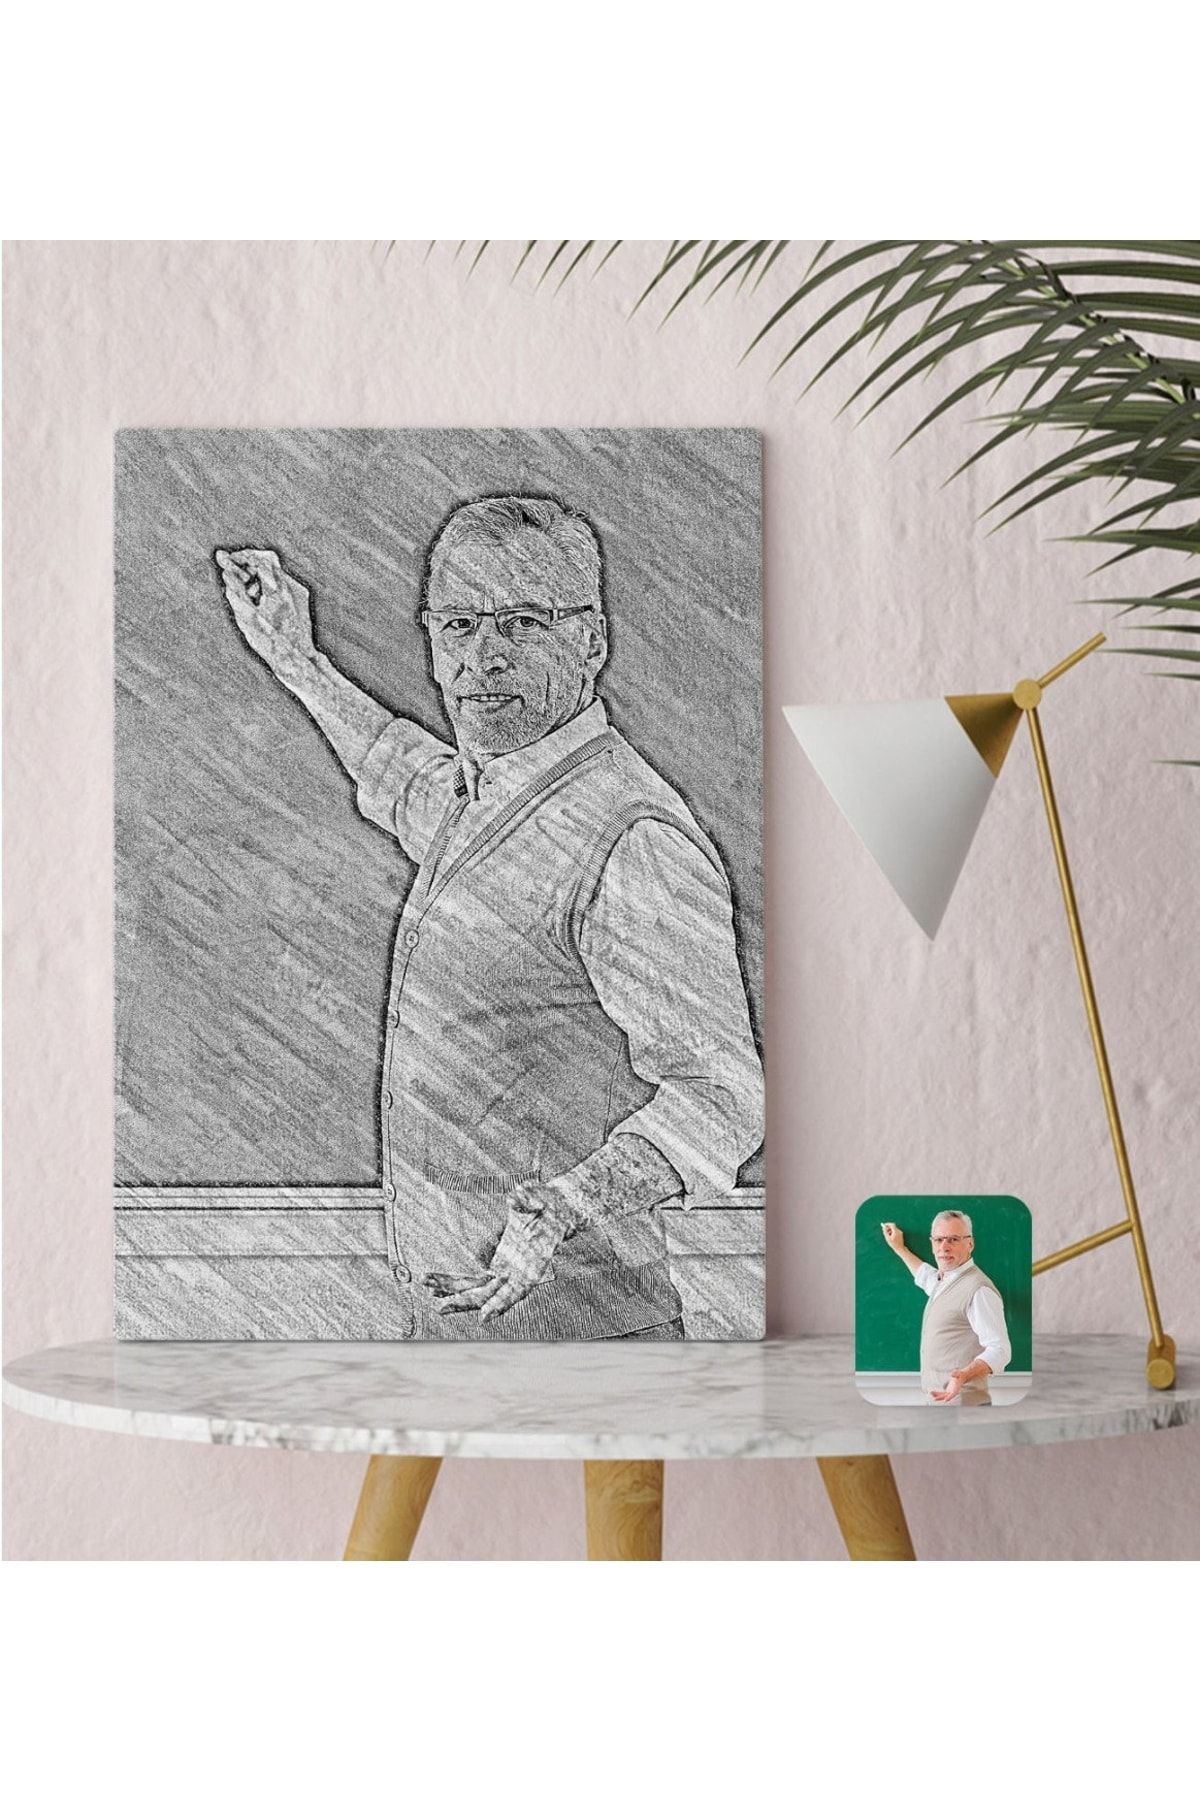 Bk Gift Kişiye Özel Erkek Öğretmen Karakalem Tasarımlı Kanvas Tablo 30x50cm-1